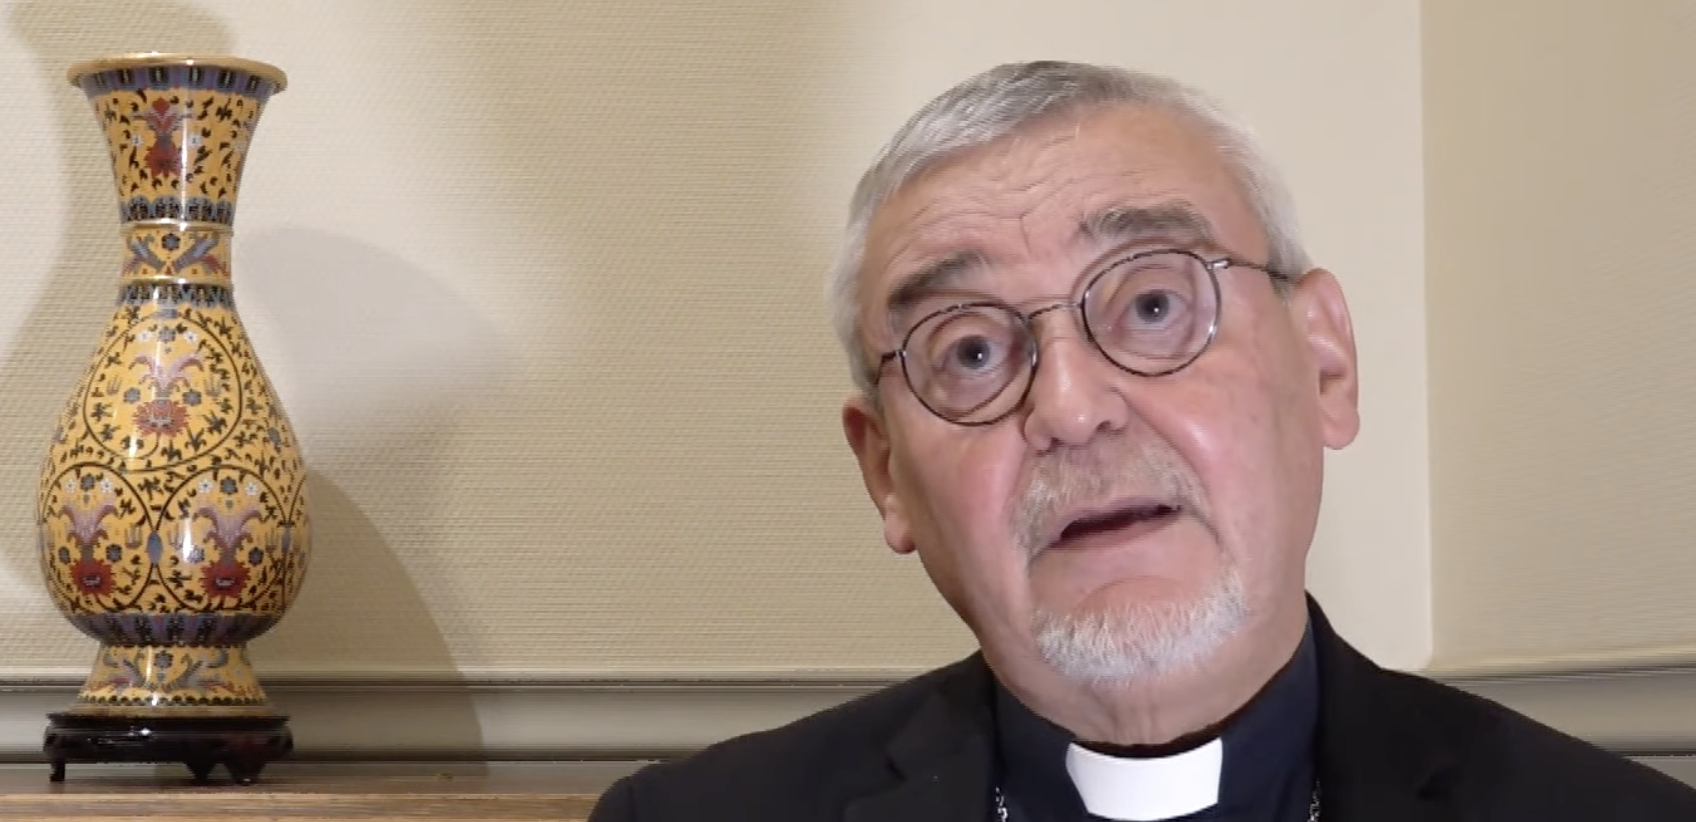 Mgr Georges Colomb, évêque de La Rochelle, est accusé de faits pouvant être assimilés à une agression sexuelle | capture d'écran KTO TV